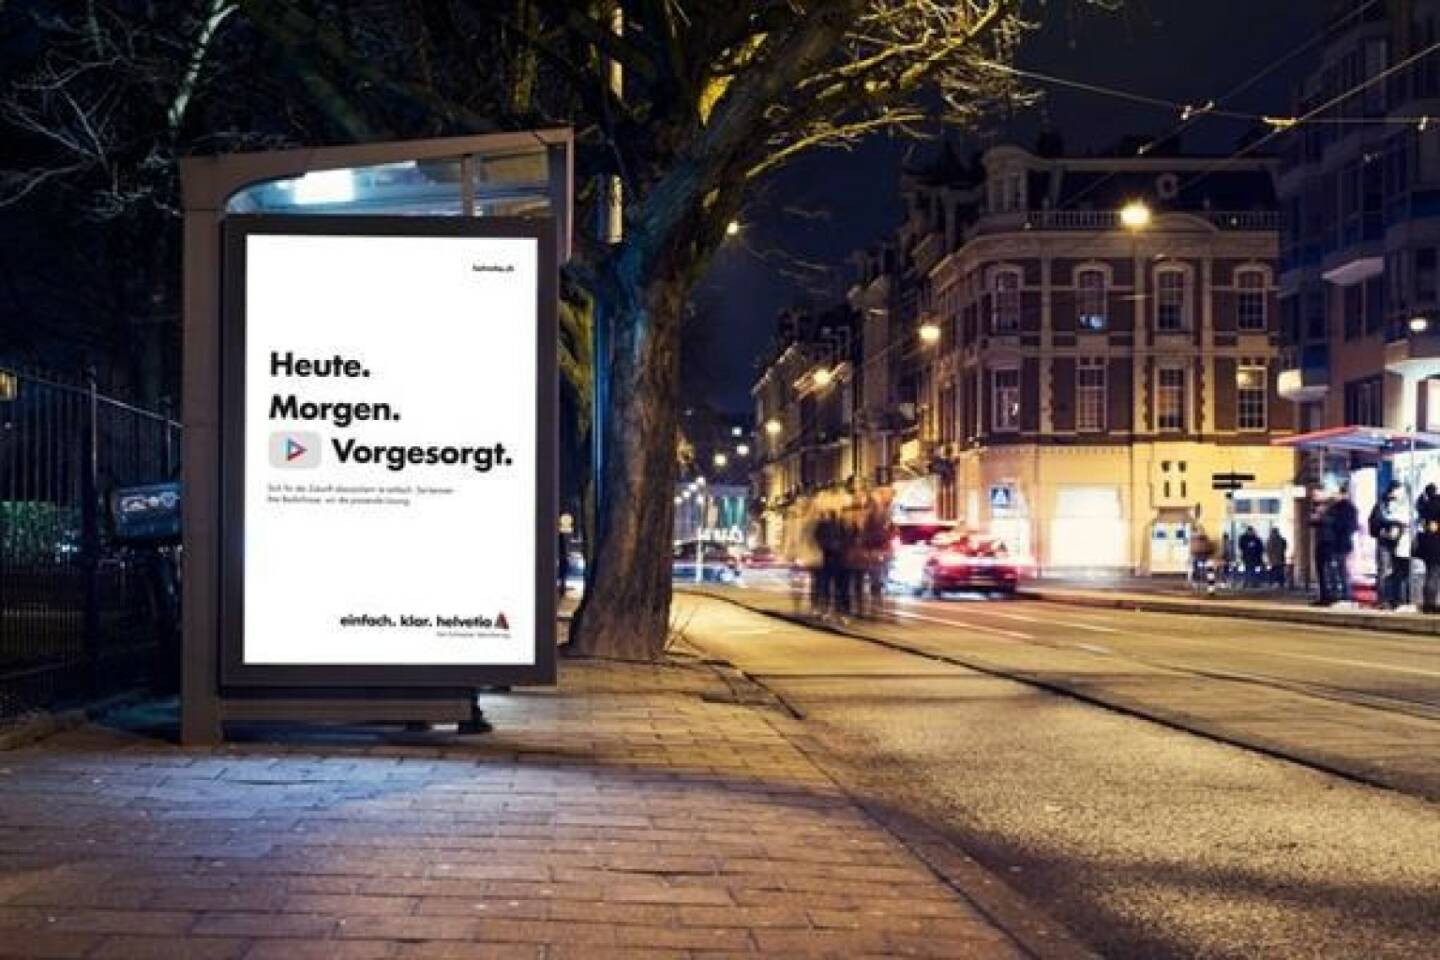 Am 1. Jänner 2018 startete Helvetia mit einem neuen Werbeauftritt in Österreich. Der neue Auftritt soll bewusst einfach wirken. Das Herzstück sind geschriebene Dreiklänge, schwarz auf weiß, die beim Publikum Bilder hervorrufen und ein klares Versprechen ausdrücken: Es geht auch einfacher. Bild: Helvetia